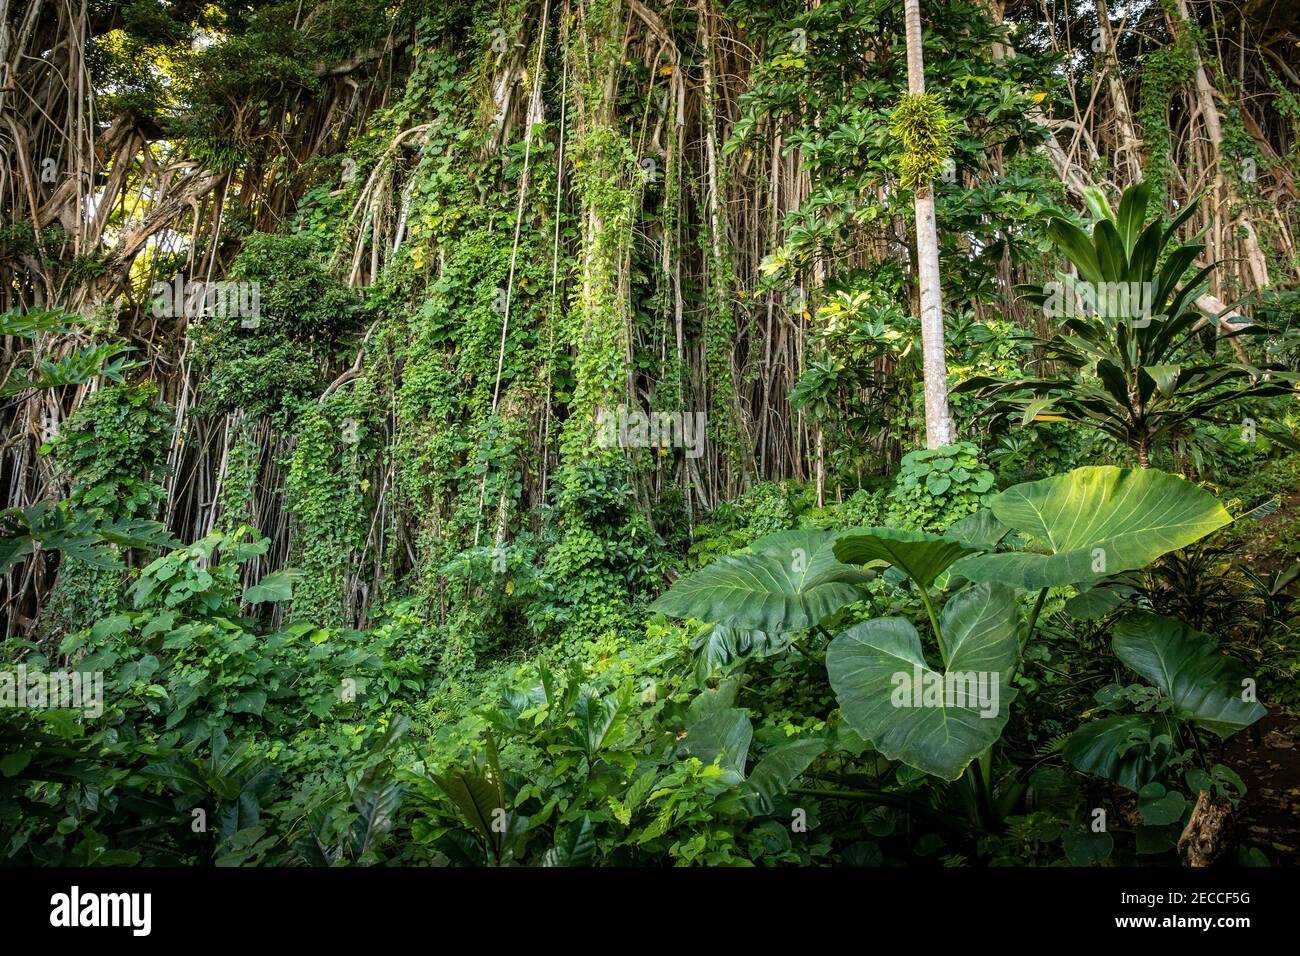 Erkunden Sie die üppige Schönheit von Vanuatus unberührtem Regenwald, geschmückt mit lebendigen grünen Pflanzen wie Lianen, banyan-Bäumen, Alocasia und Palmen Stockfoto